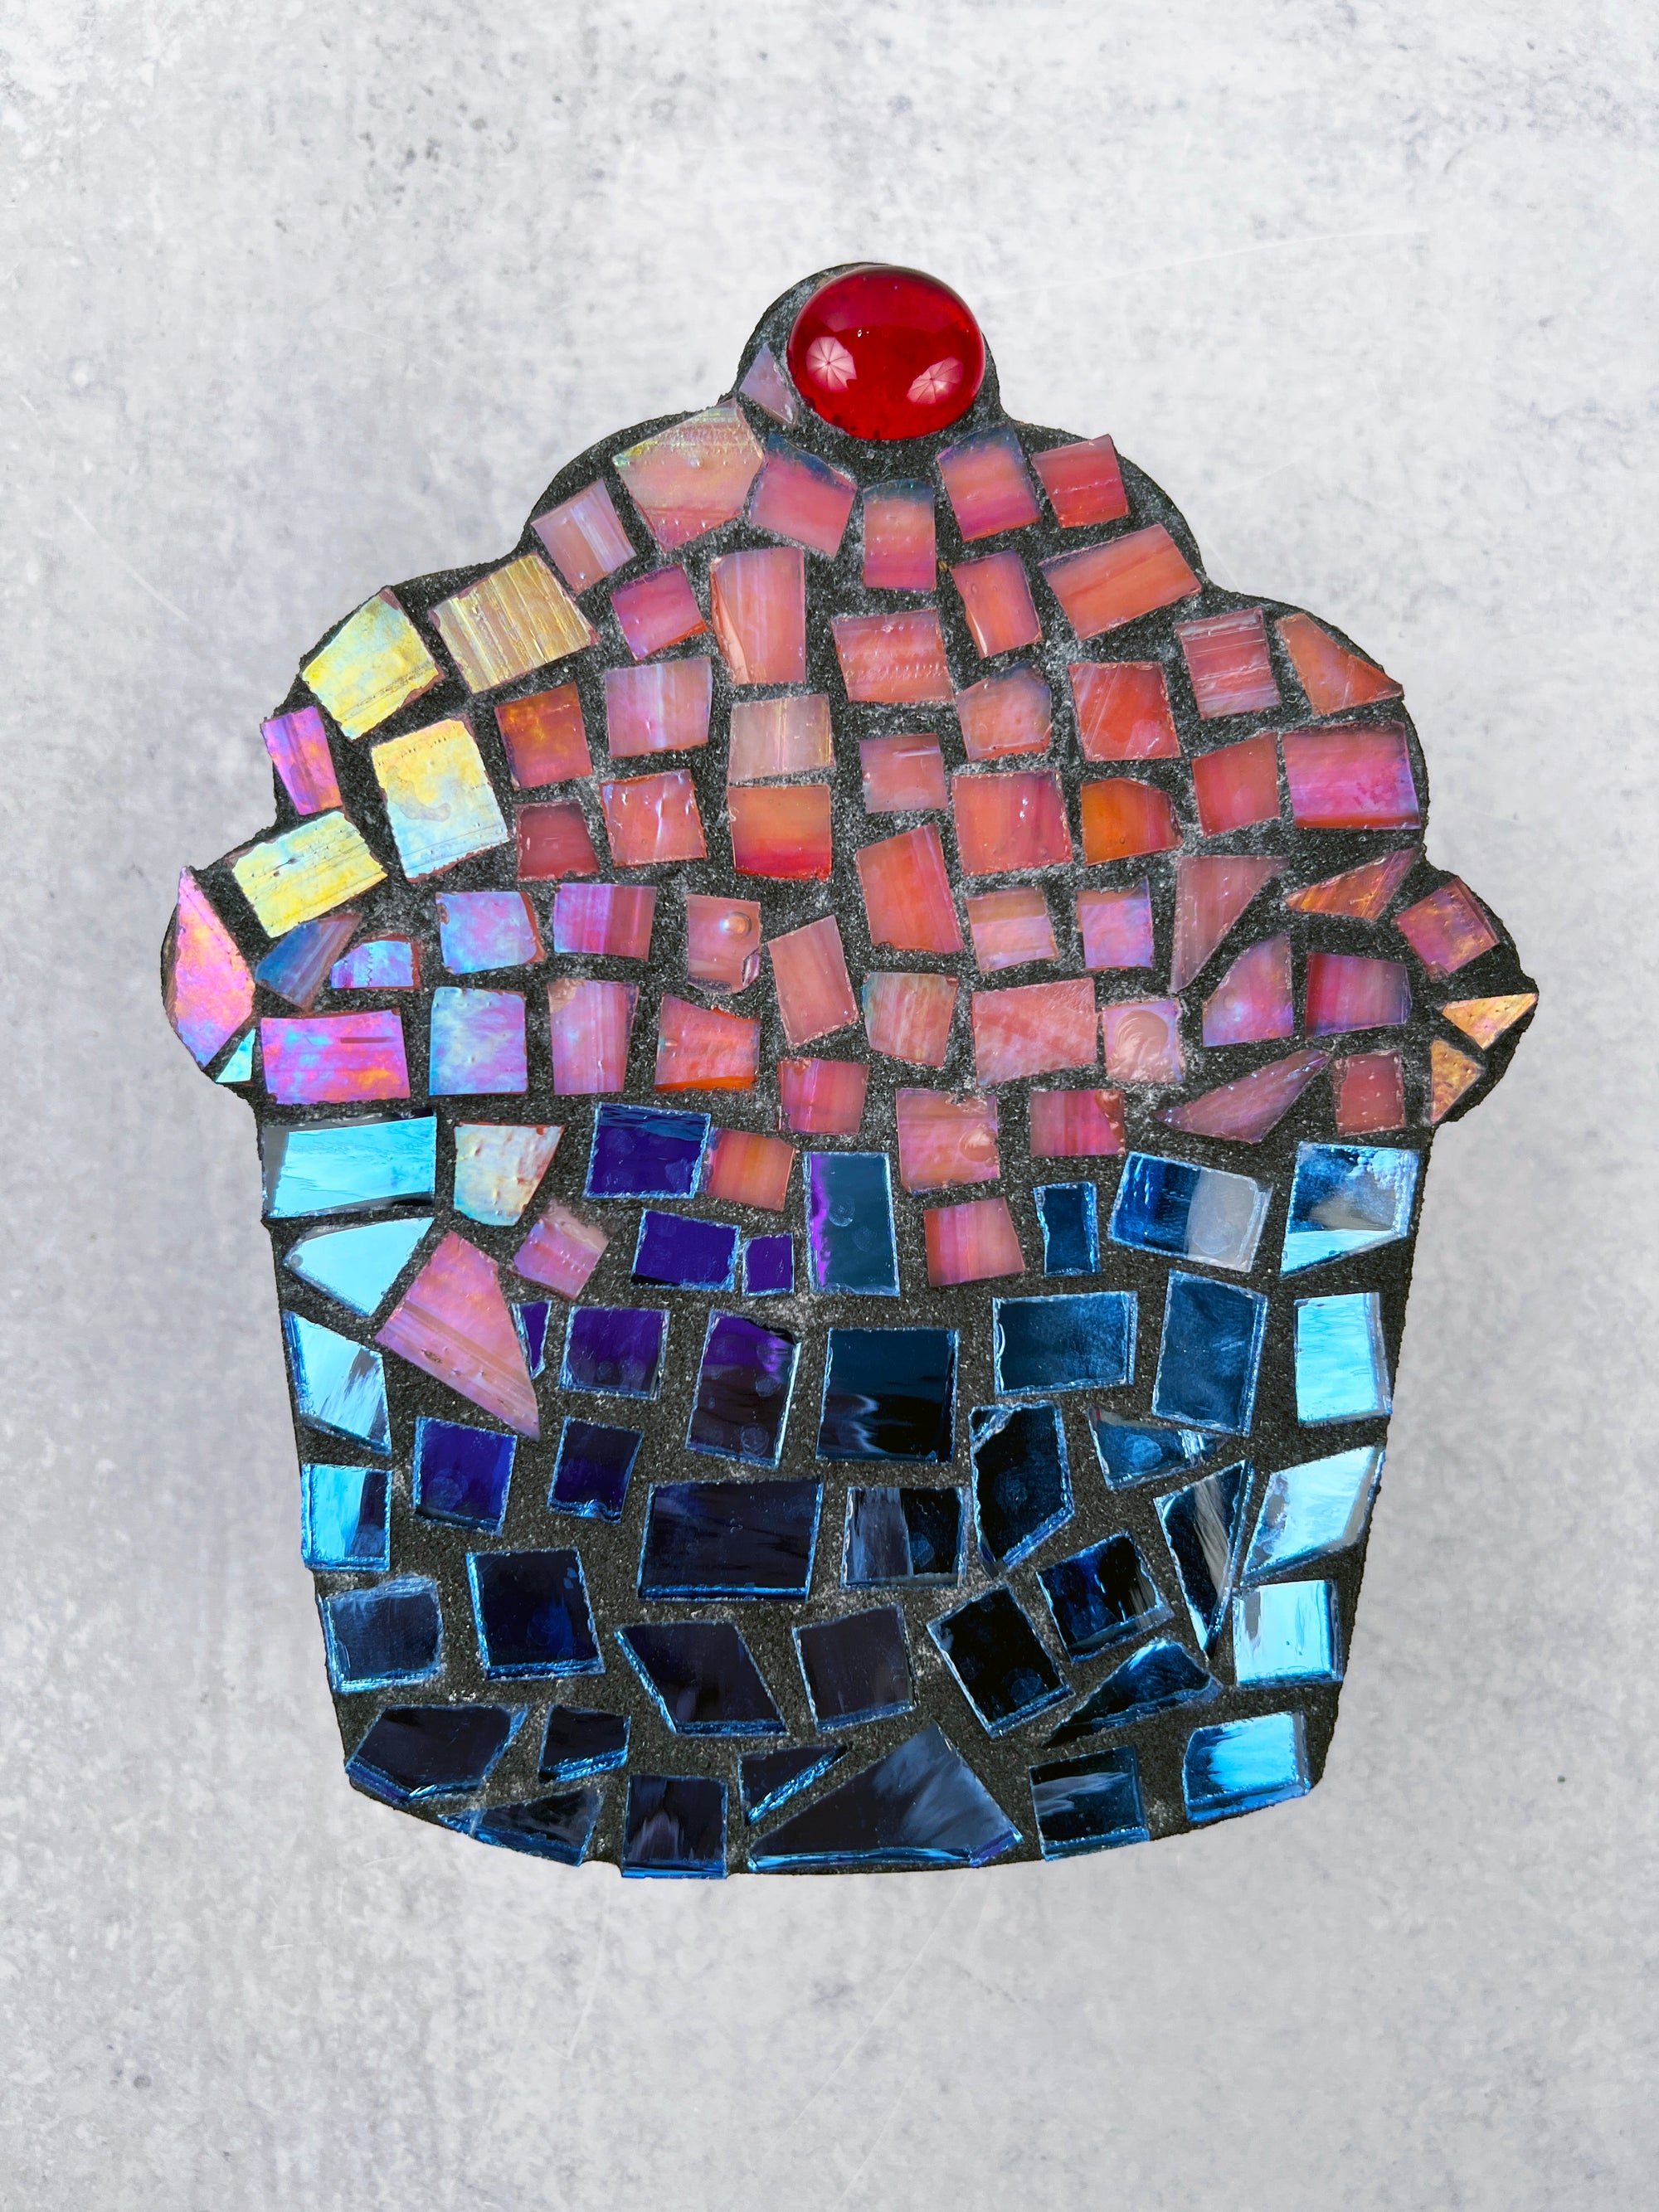 Mosaic Cupcake